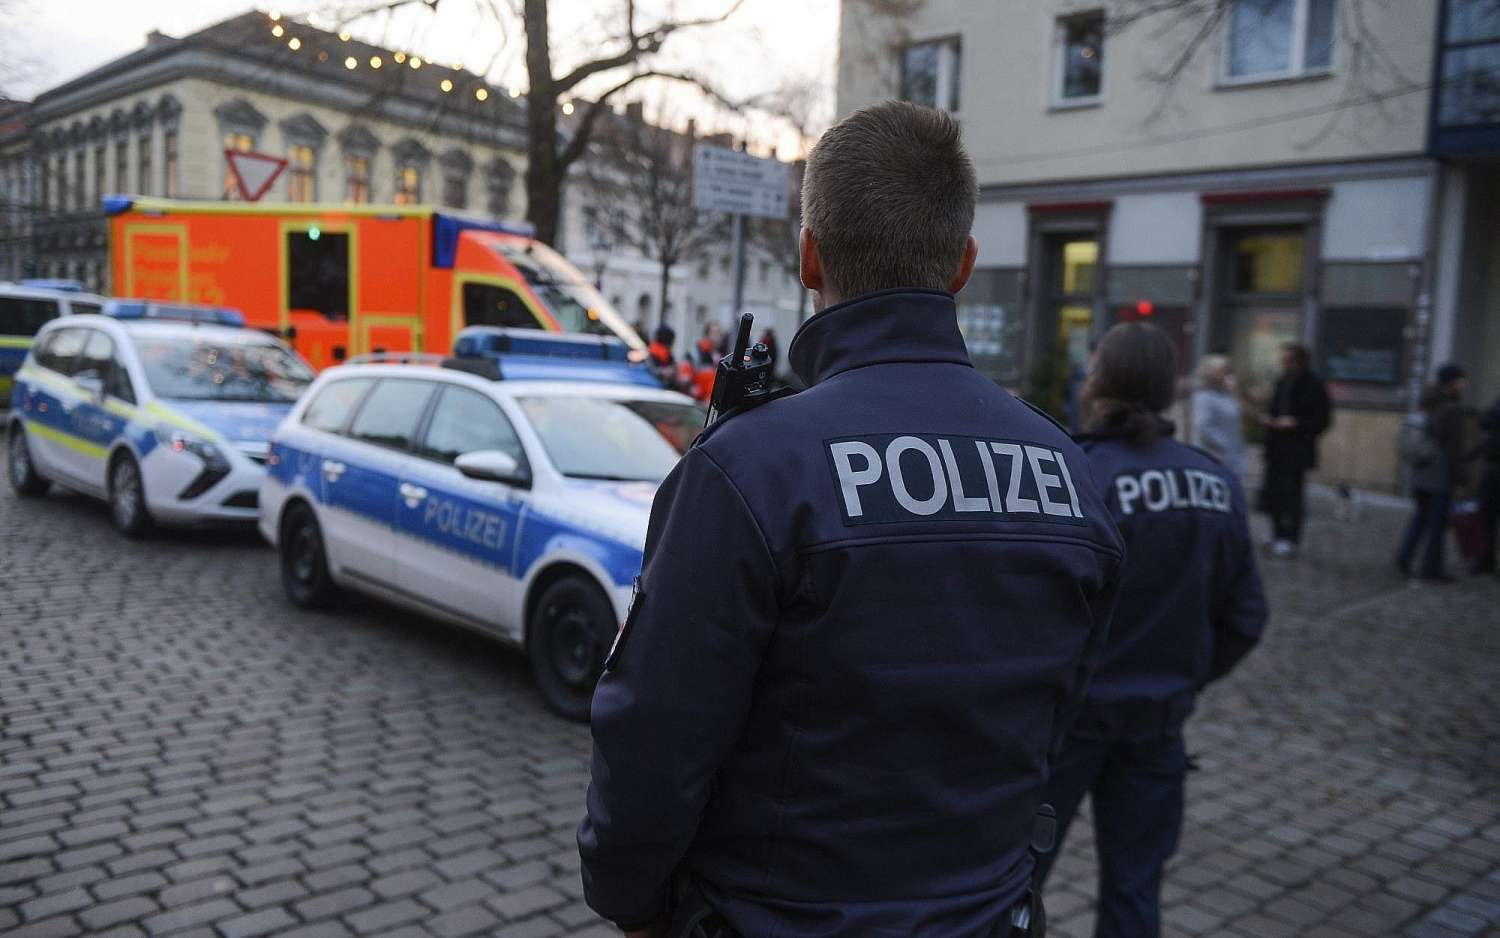 Γερμανία: Συγκροτούνται ομάδες αυτοάμυνας πολιτών μετά τις επιθέσεις μεταναστών